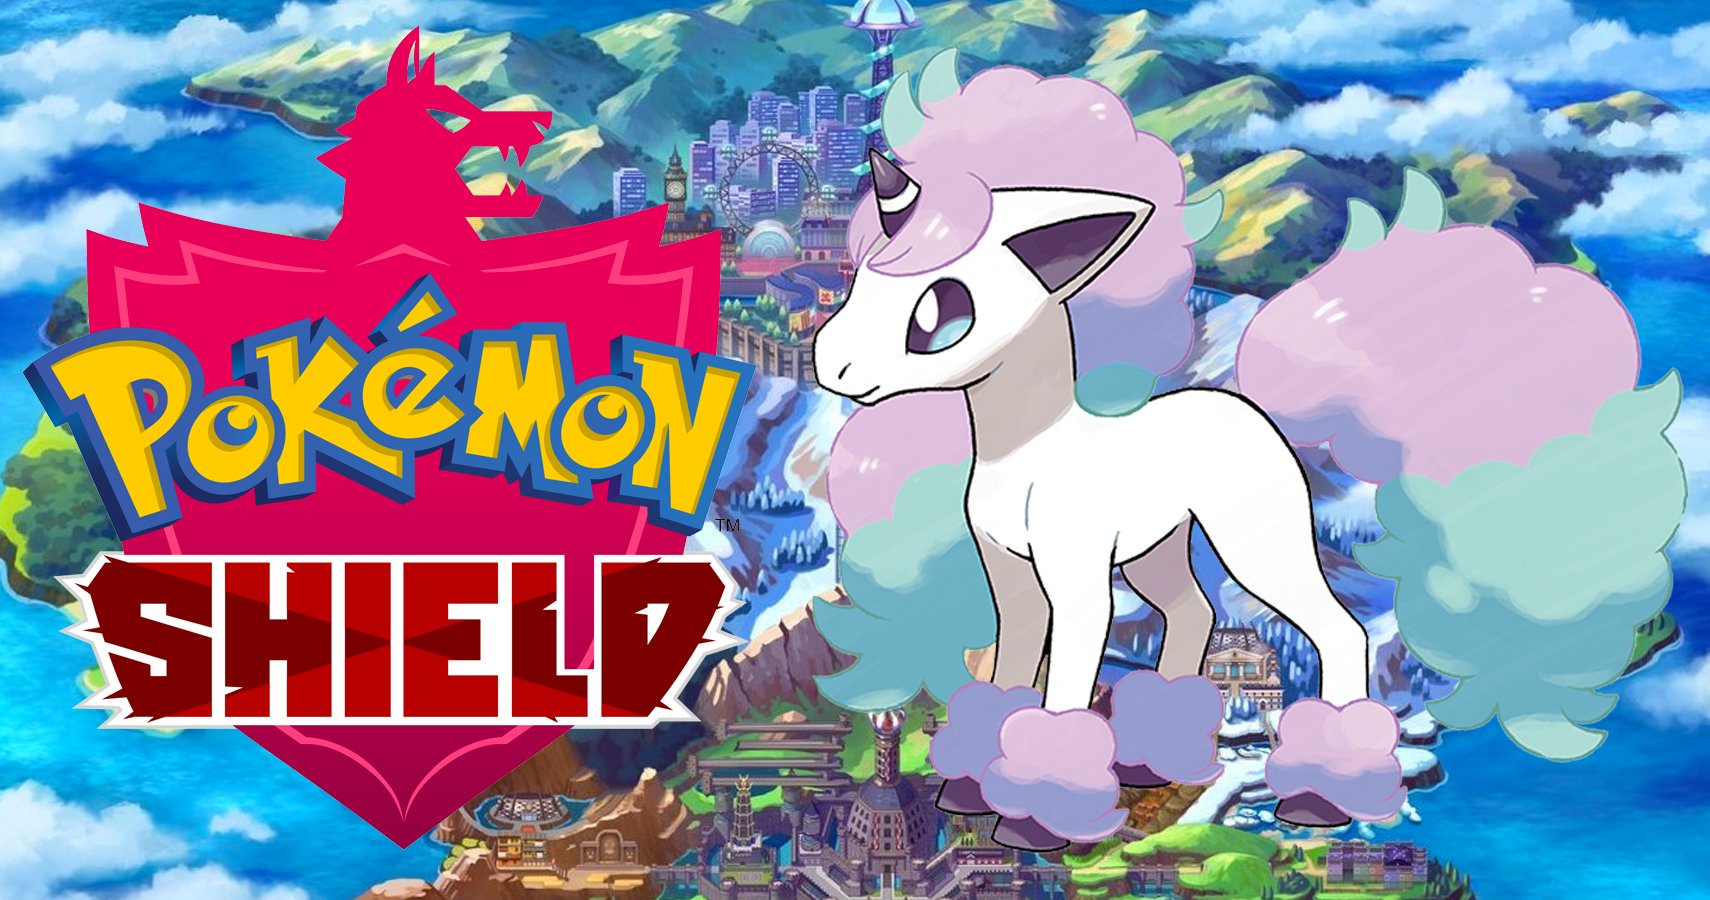 Pokémon Sword and Pokémon Shield news: Latest leak will help you